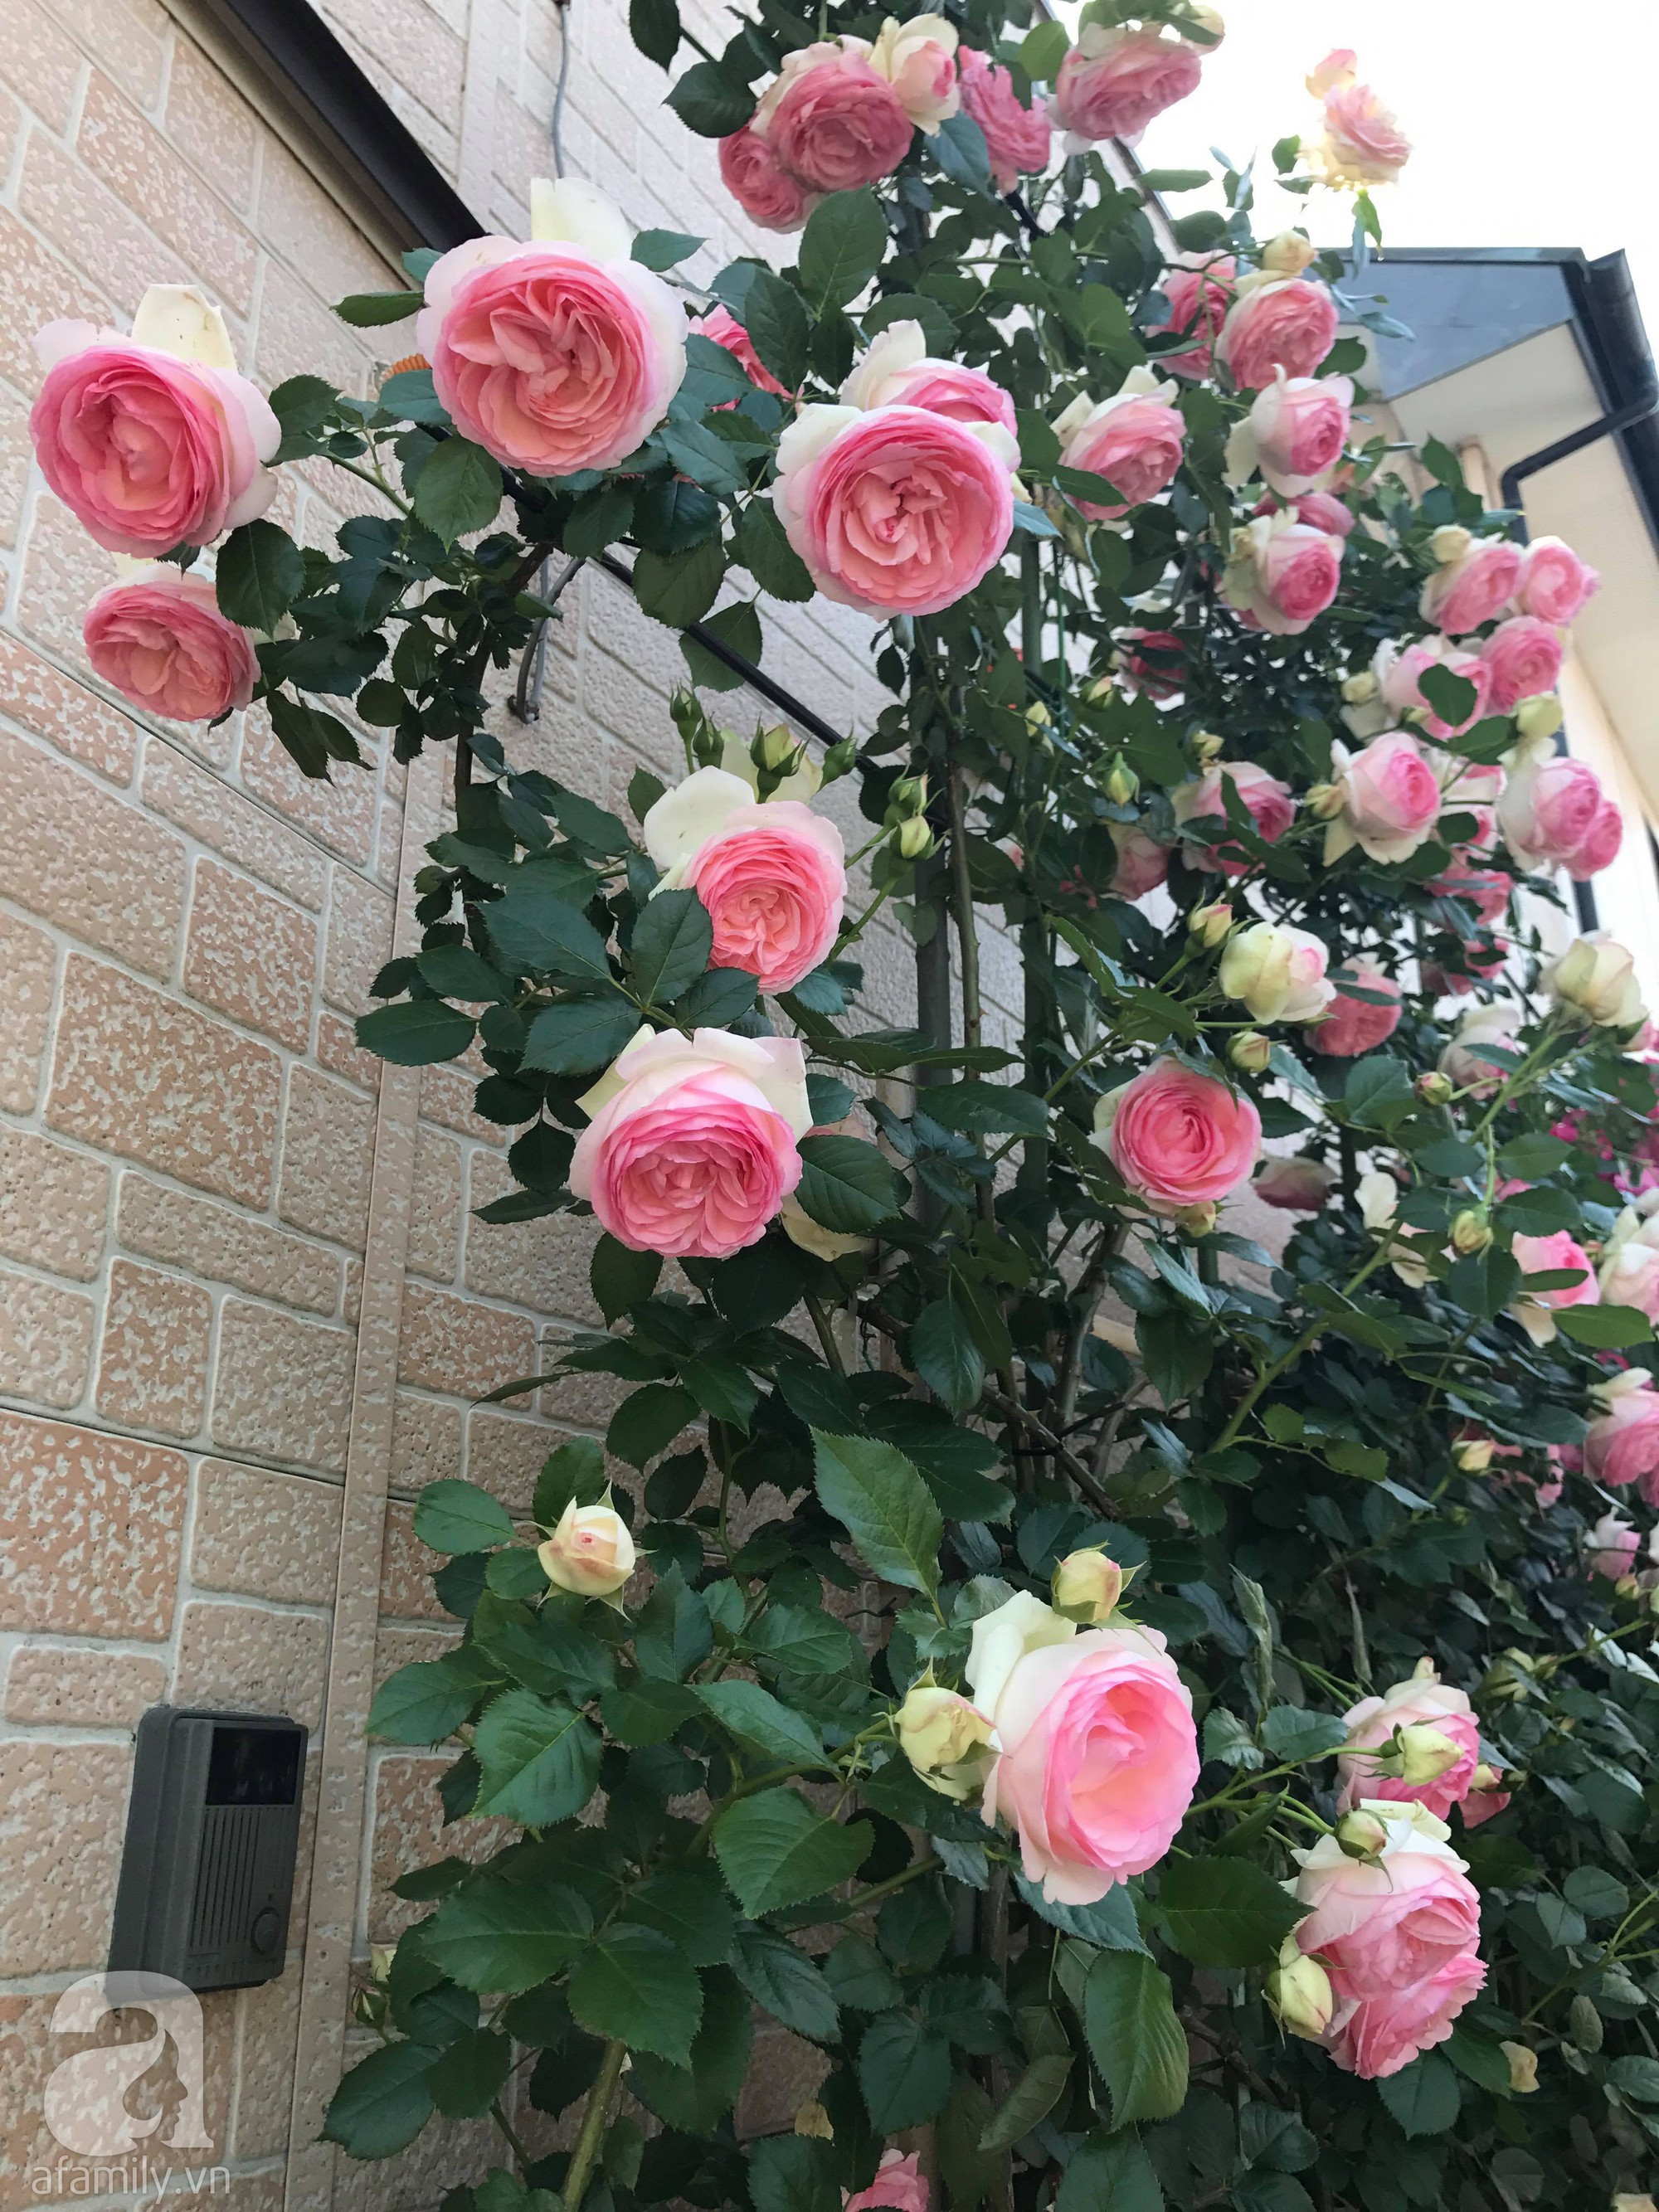 Bức tường hoa hồng đẹp như mơ trong sân vườn vỏn vẹn 6m² của người phụ nữ bỏ ra 5 năm miệt mài chăm sóc - Ảnh 5.